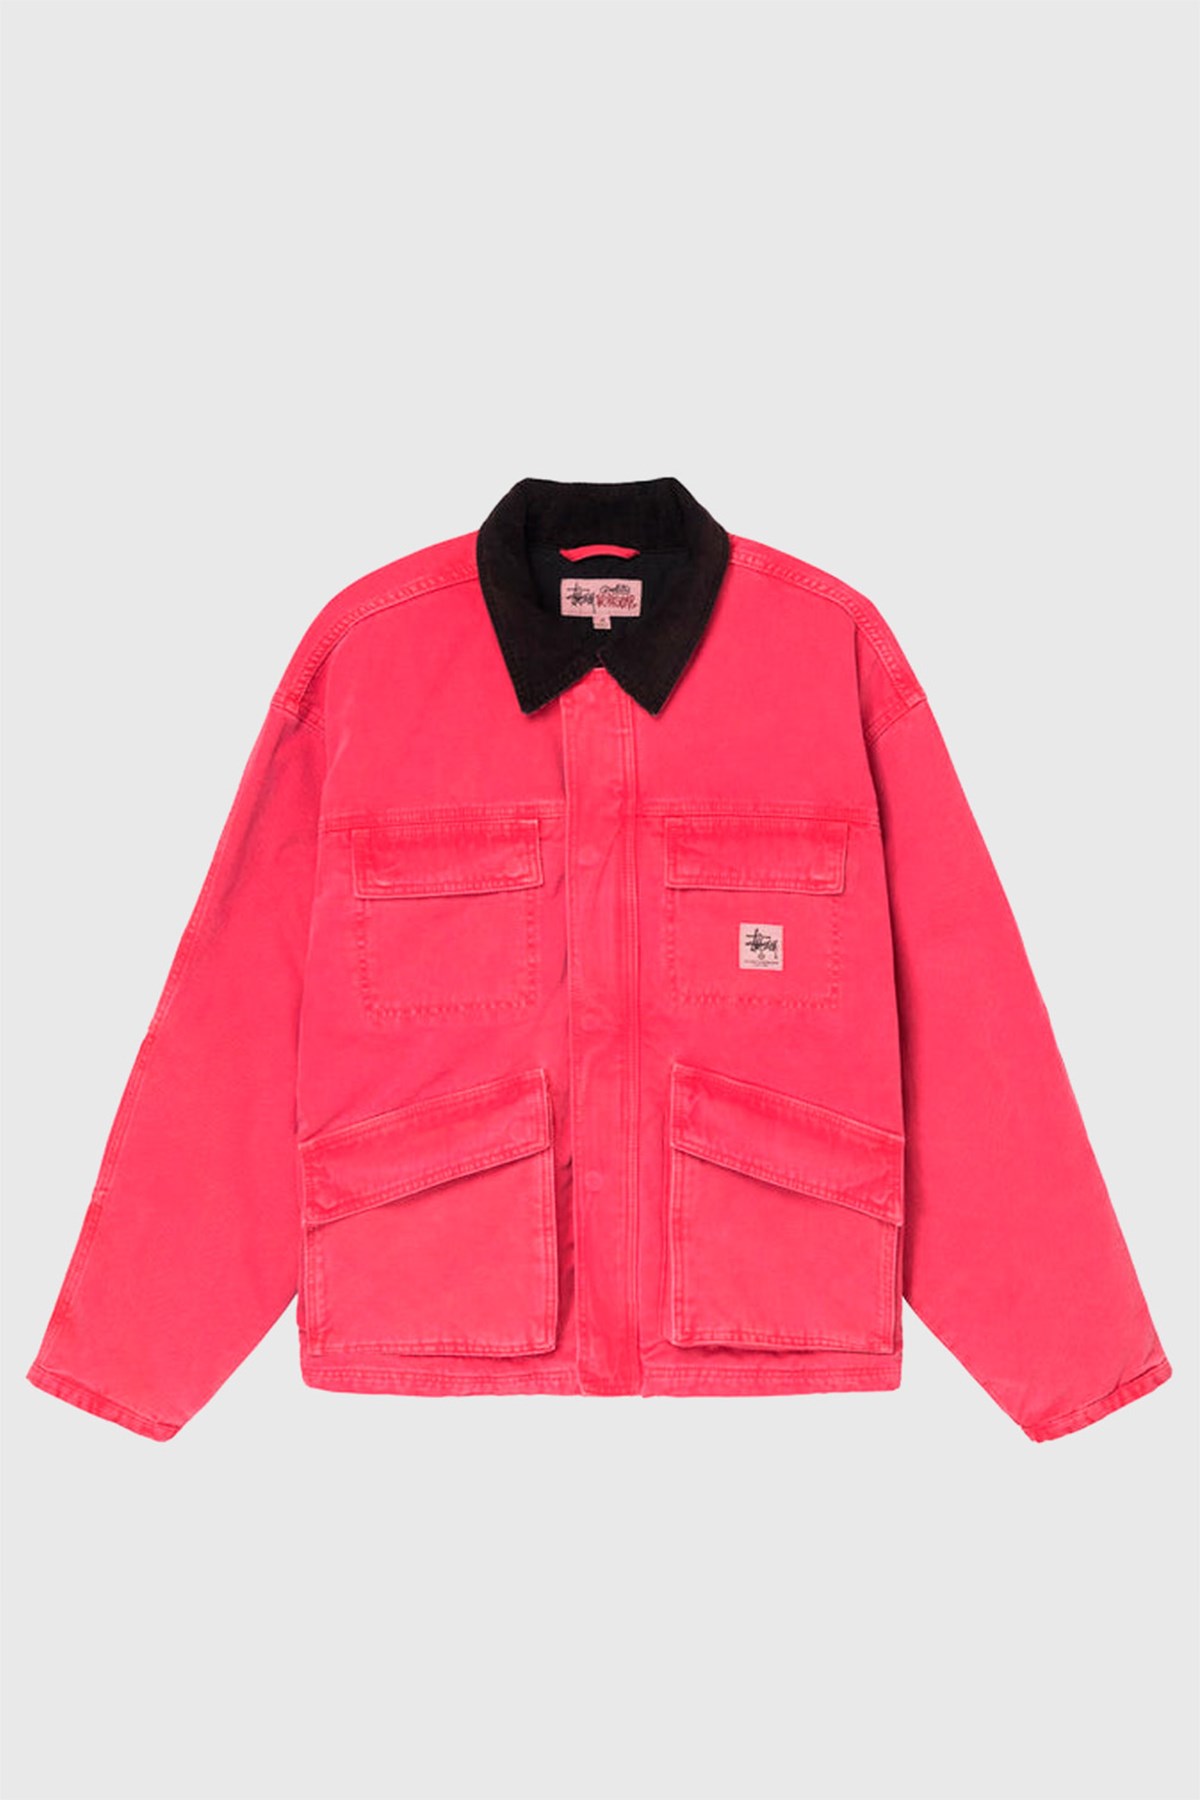 Stüssy Washed Canvas Shop Jacket Hot pink | WoodWood.com